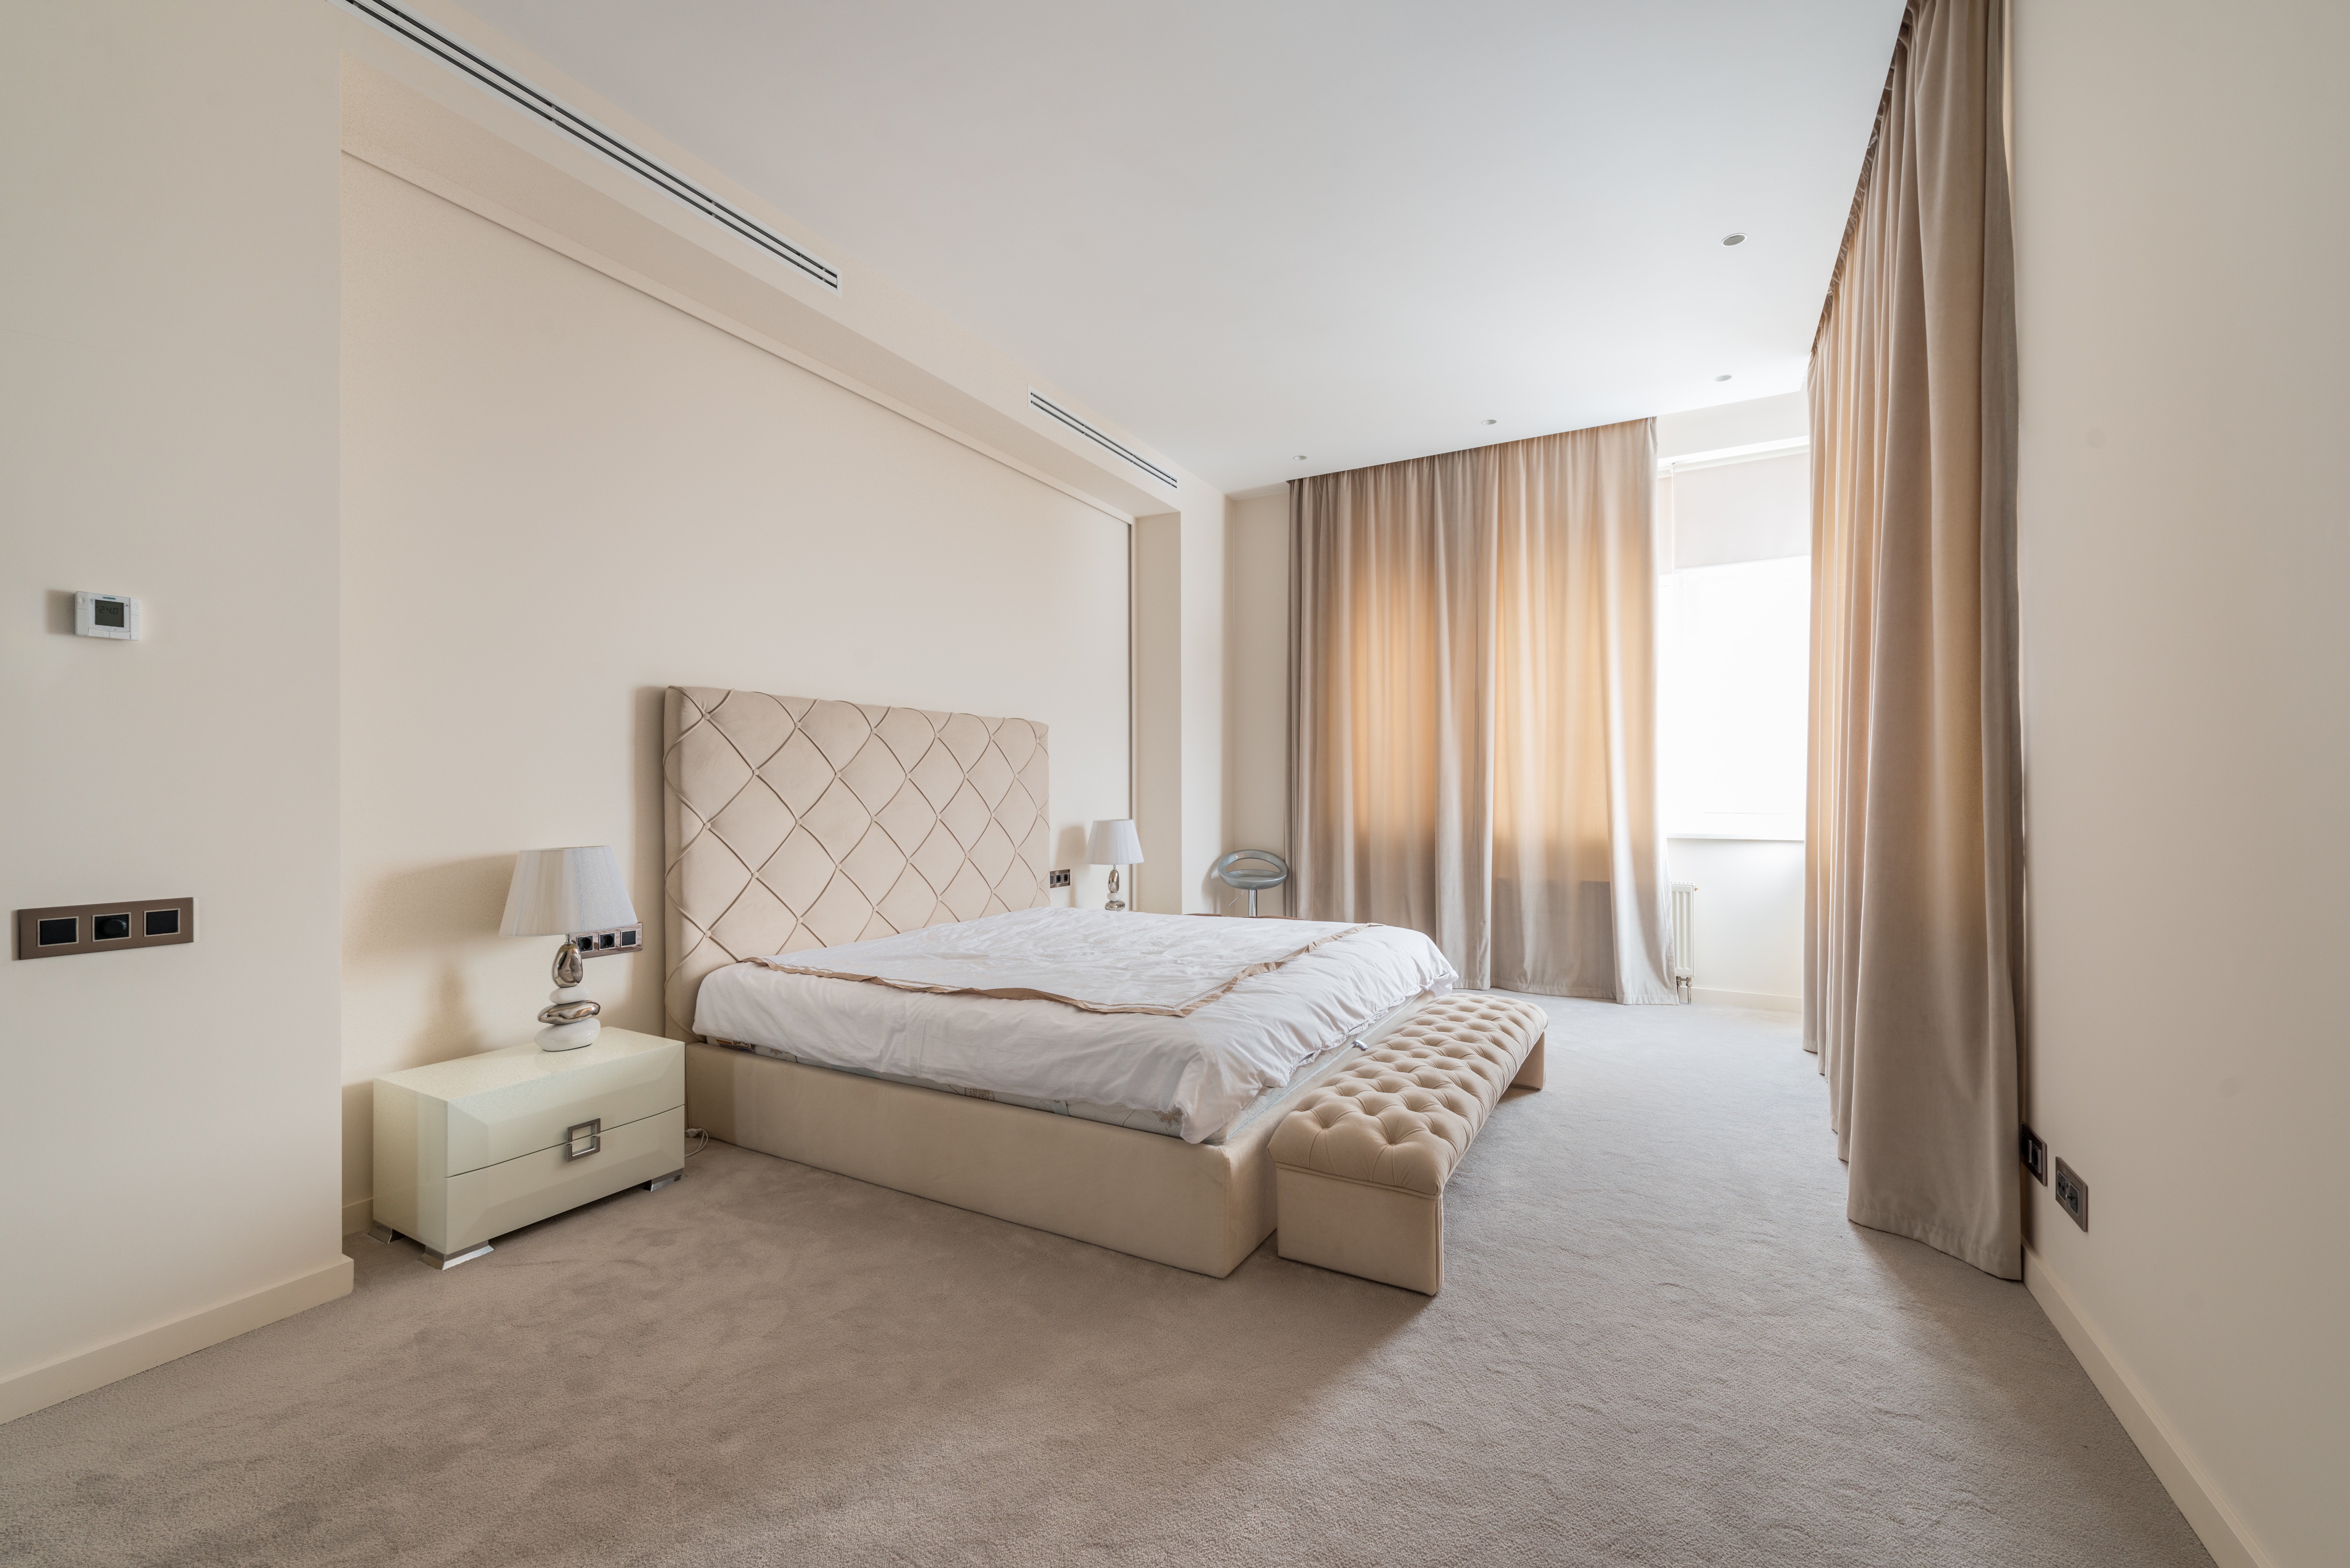 98 idées de déco de lit cozy et moderne pour sublimer sa chambre à